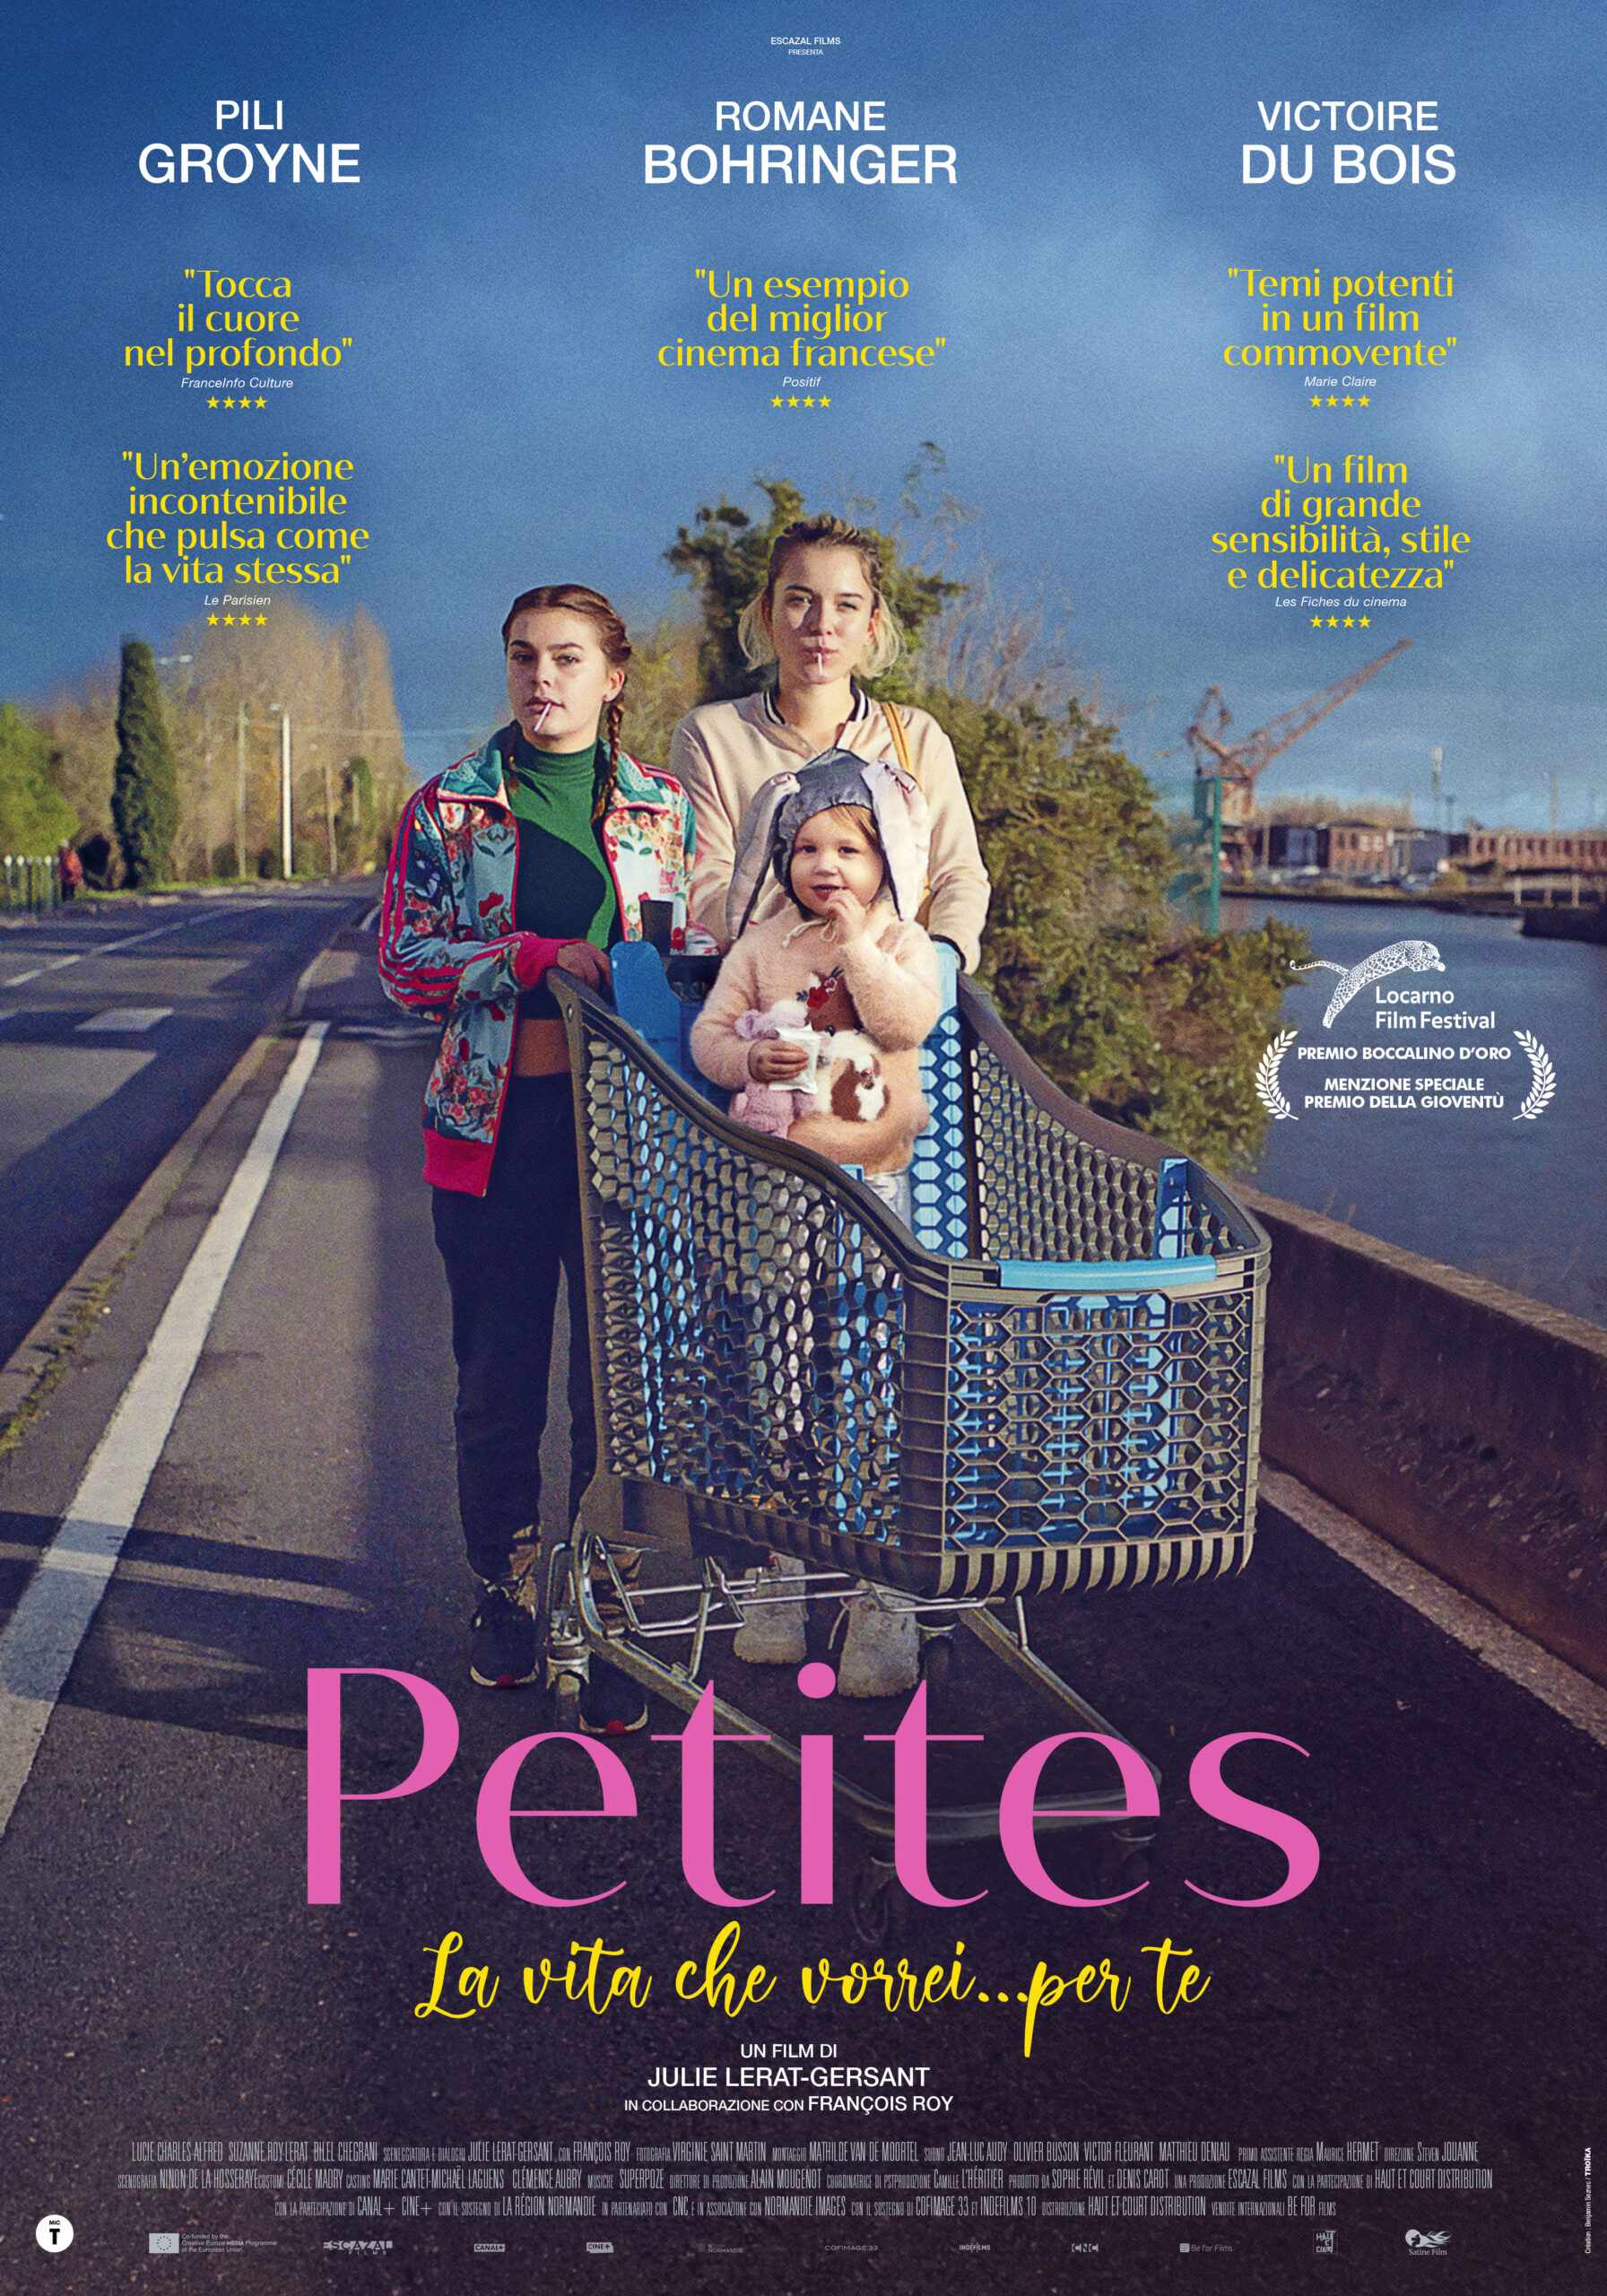 Il poster del film Petites - La vita che vorrei… per te, di Julie Lerat-Gersant